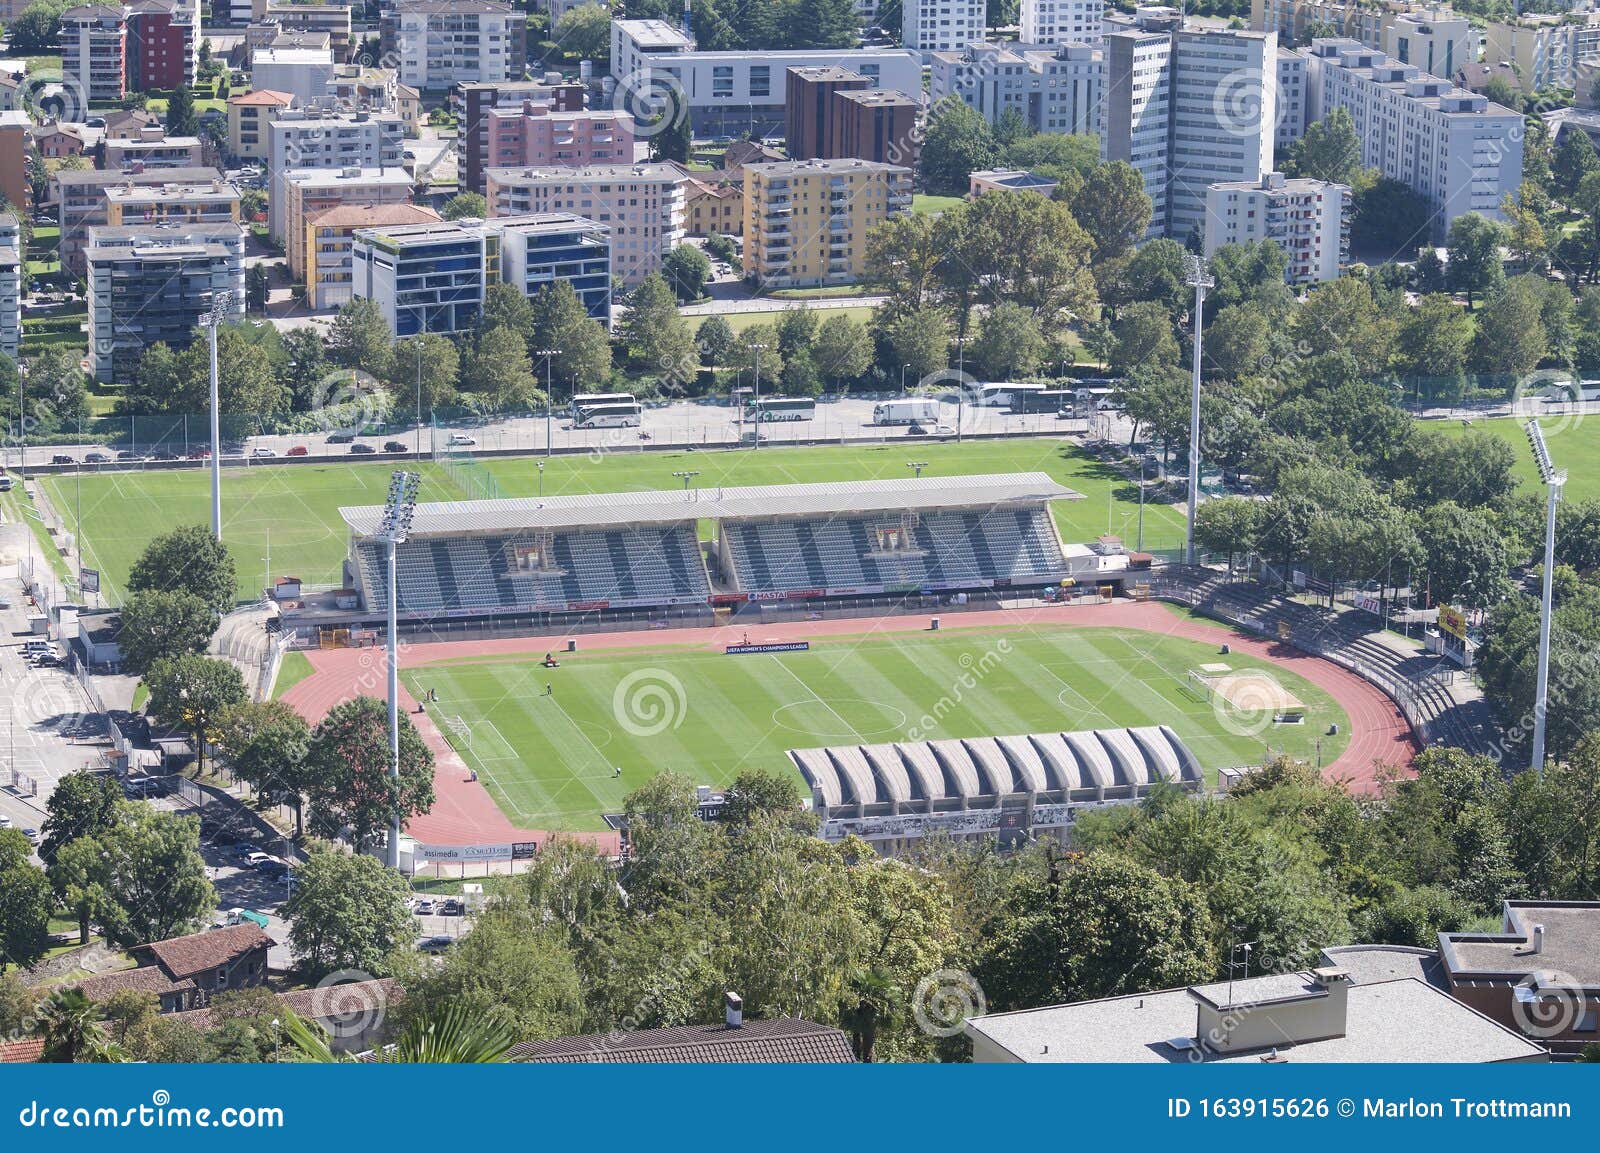 Stadio di Cornaredo / Cornaredo Stadium, FC Lugano, Google Earth